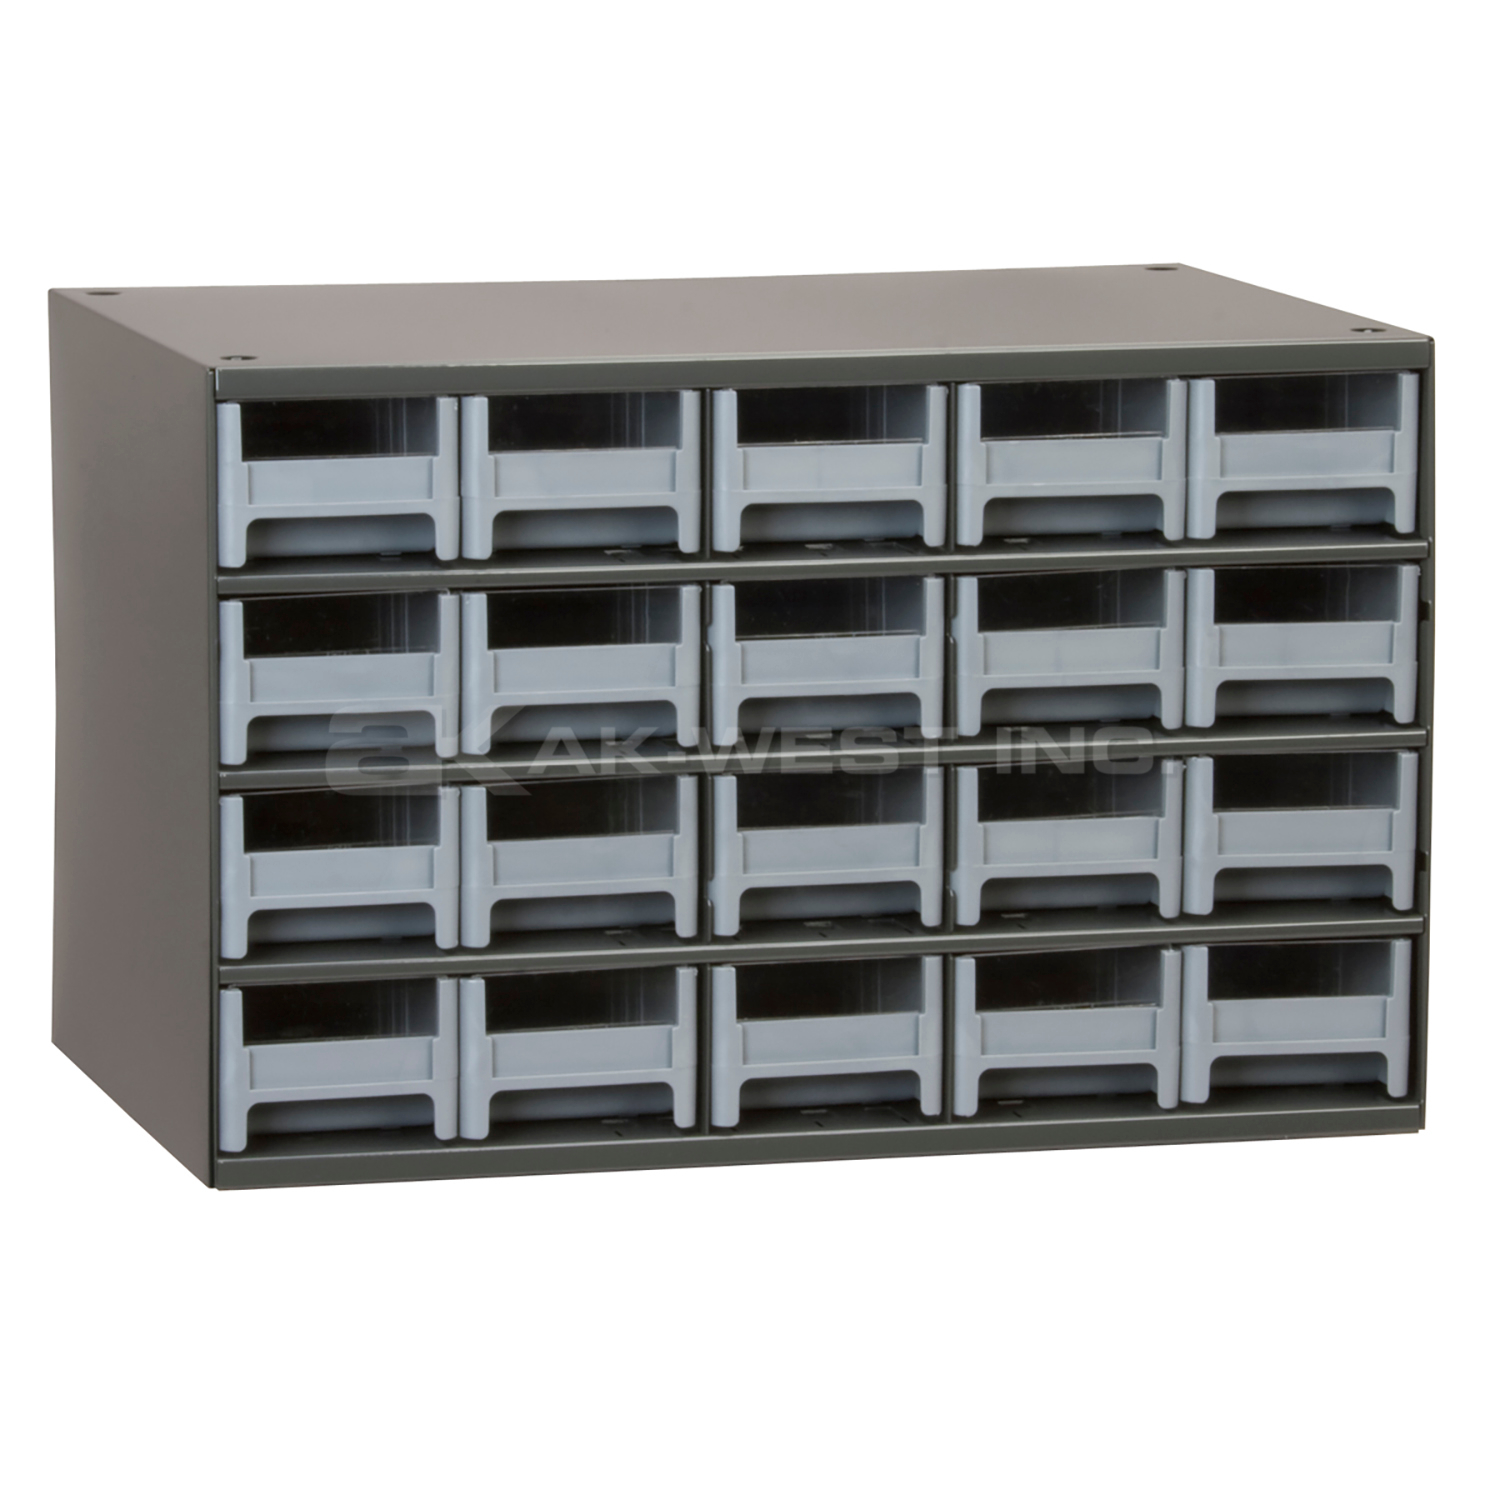 Grey, 17" x 11" x 11" Steel Modular Cabinet w/ 20 Drawers - Drawer Size 3-3/16" x 2-1/16" x 10-9/16"